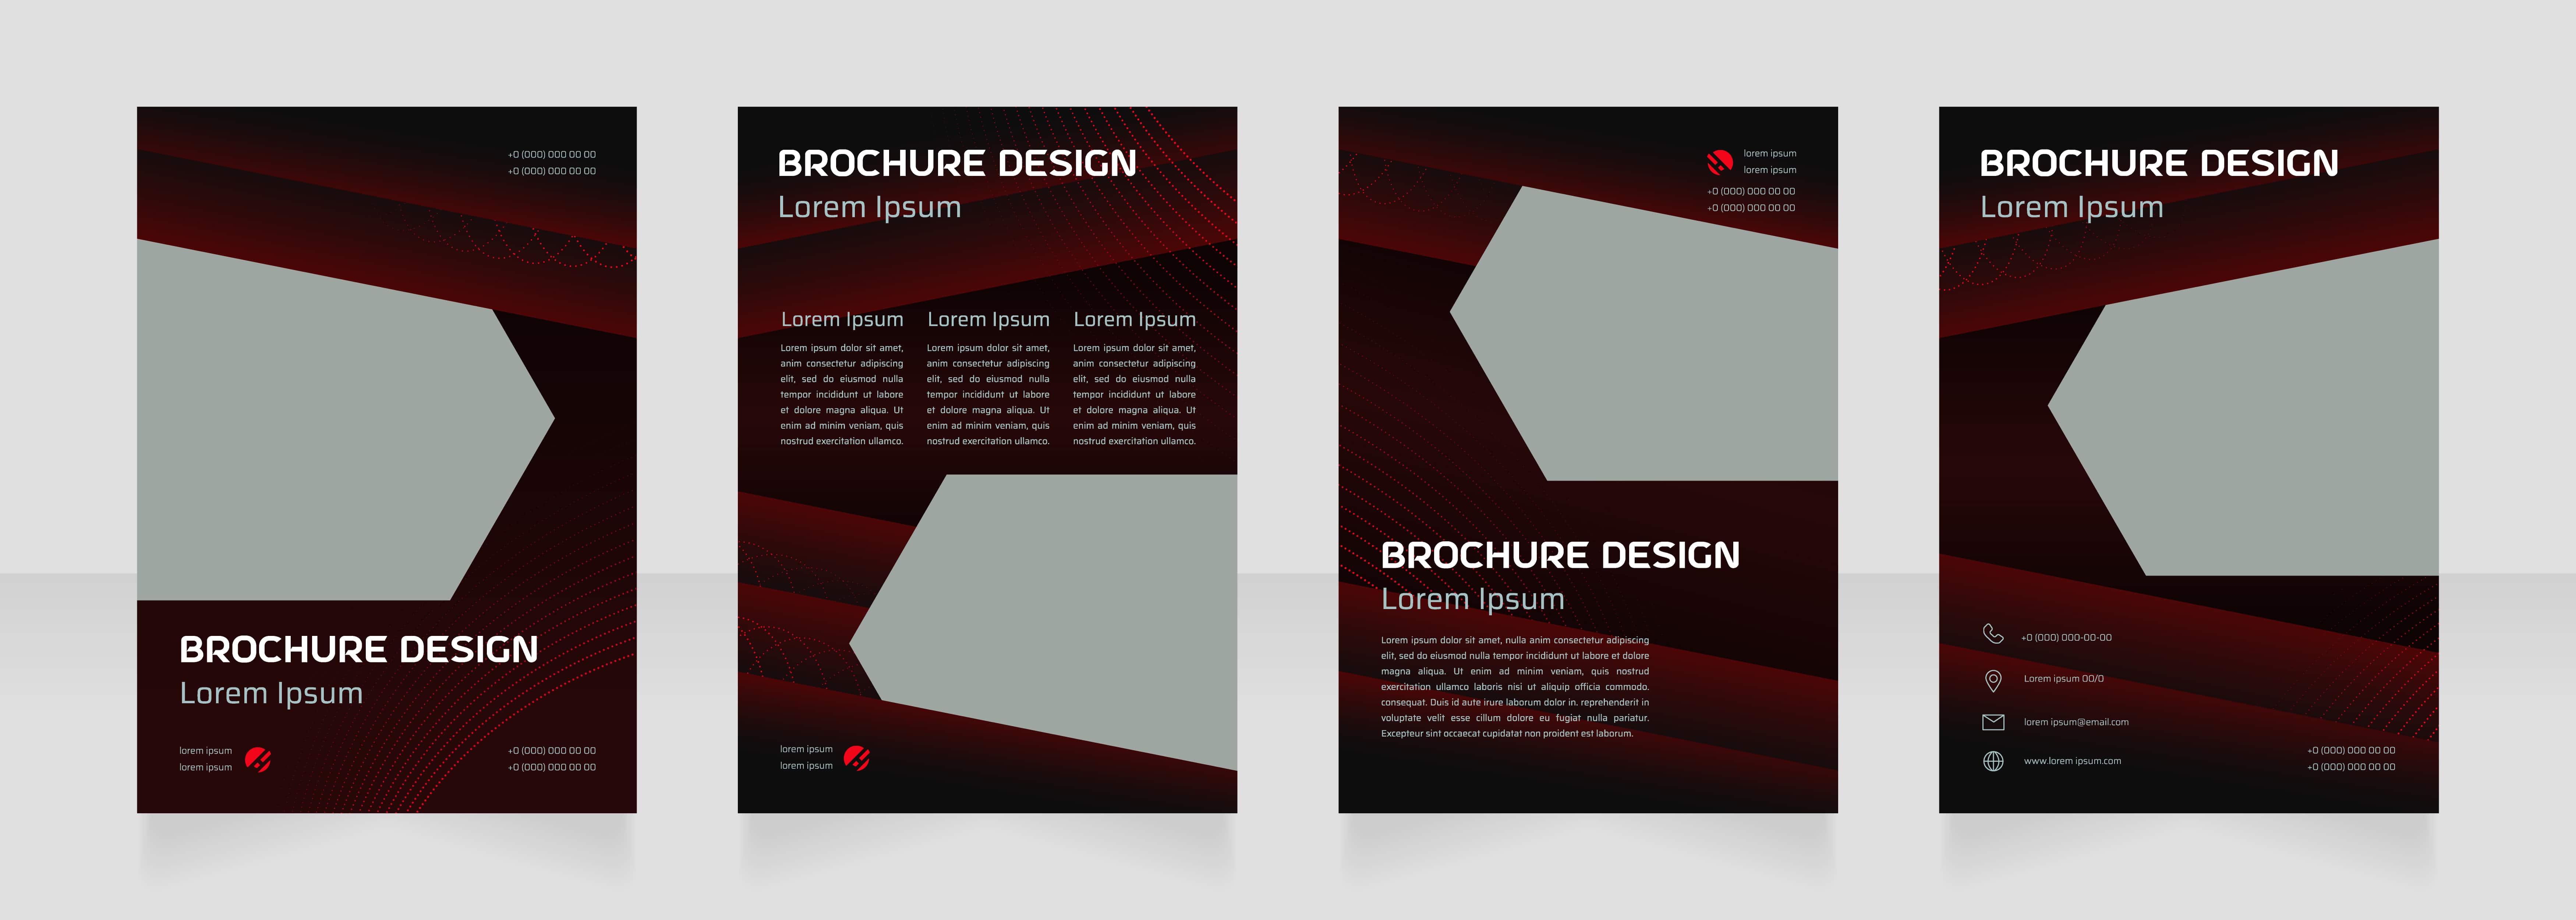 Brochure Design Company in Delhi